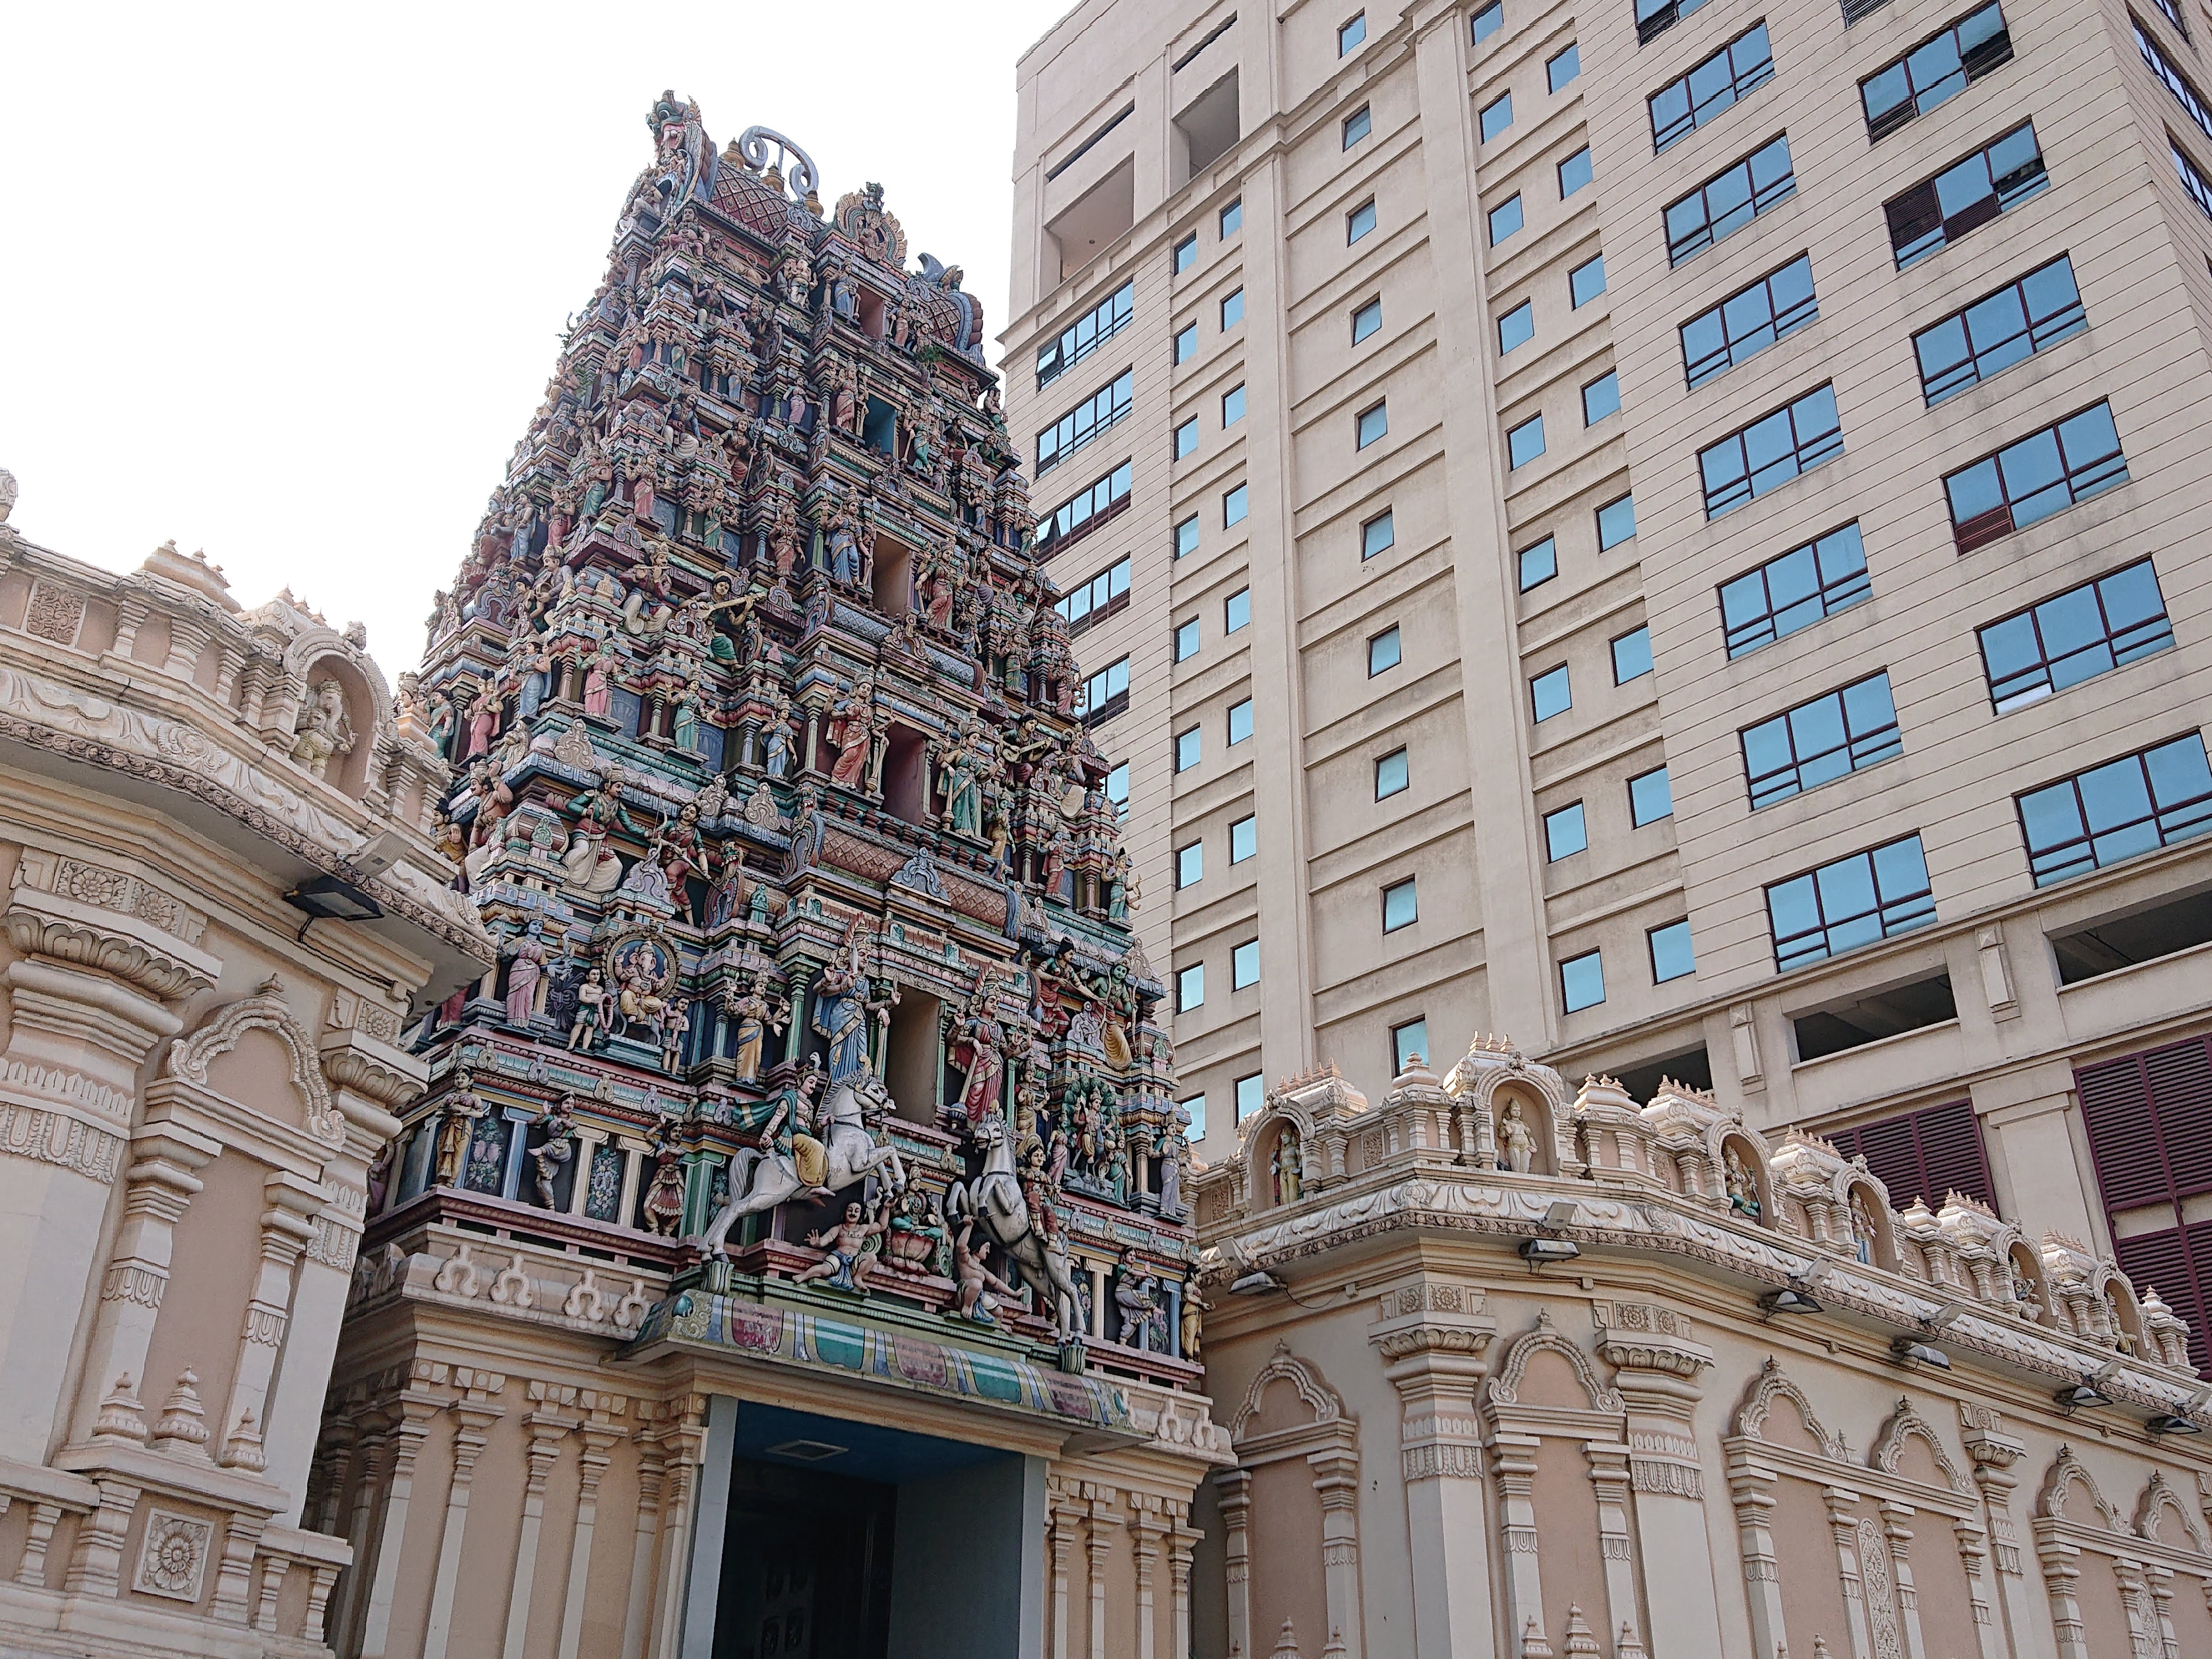 KL Hindu Temple